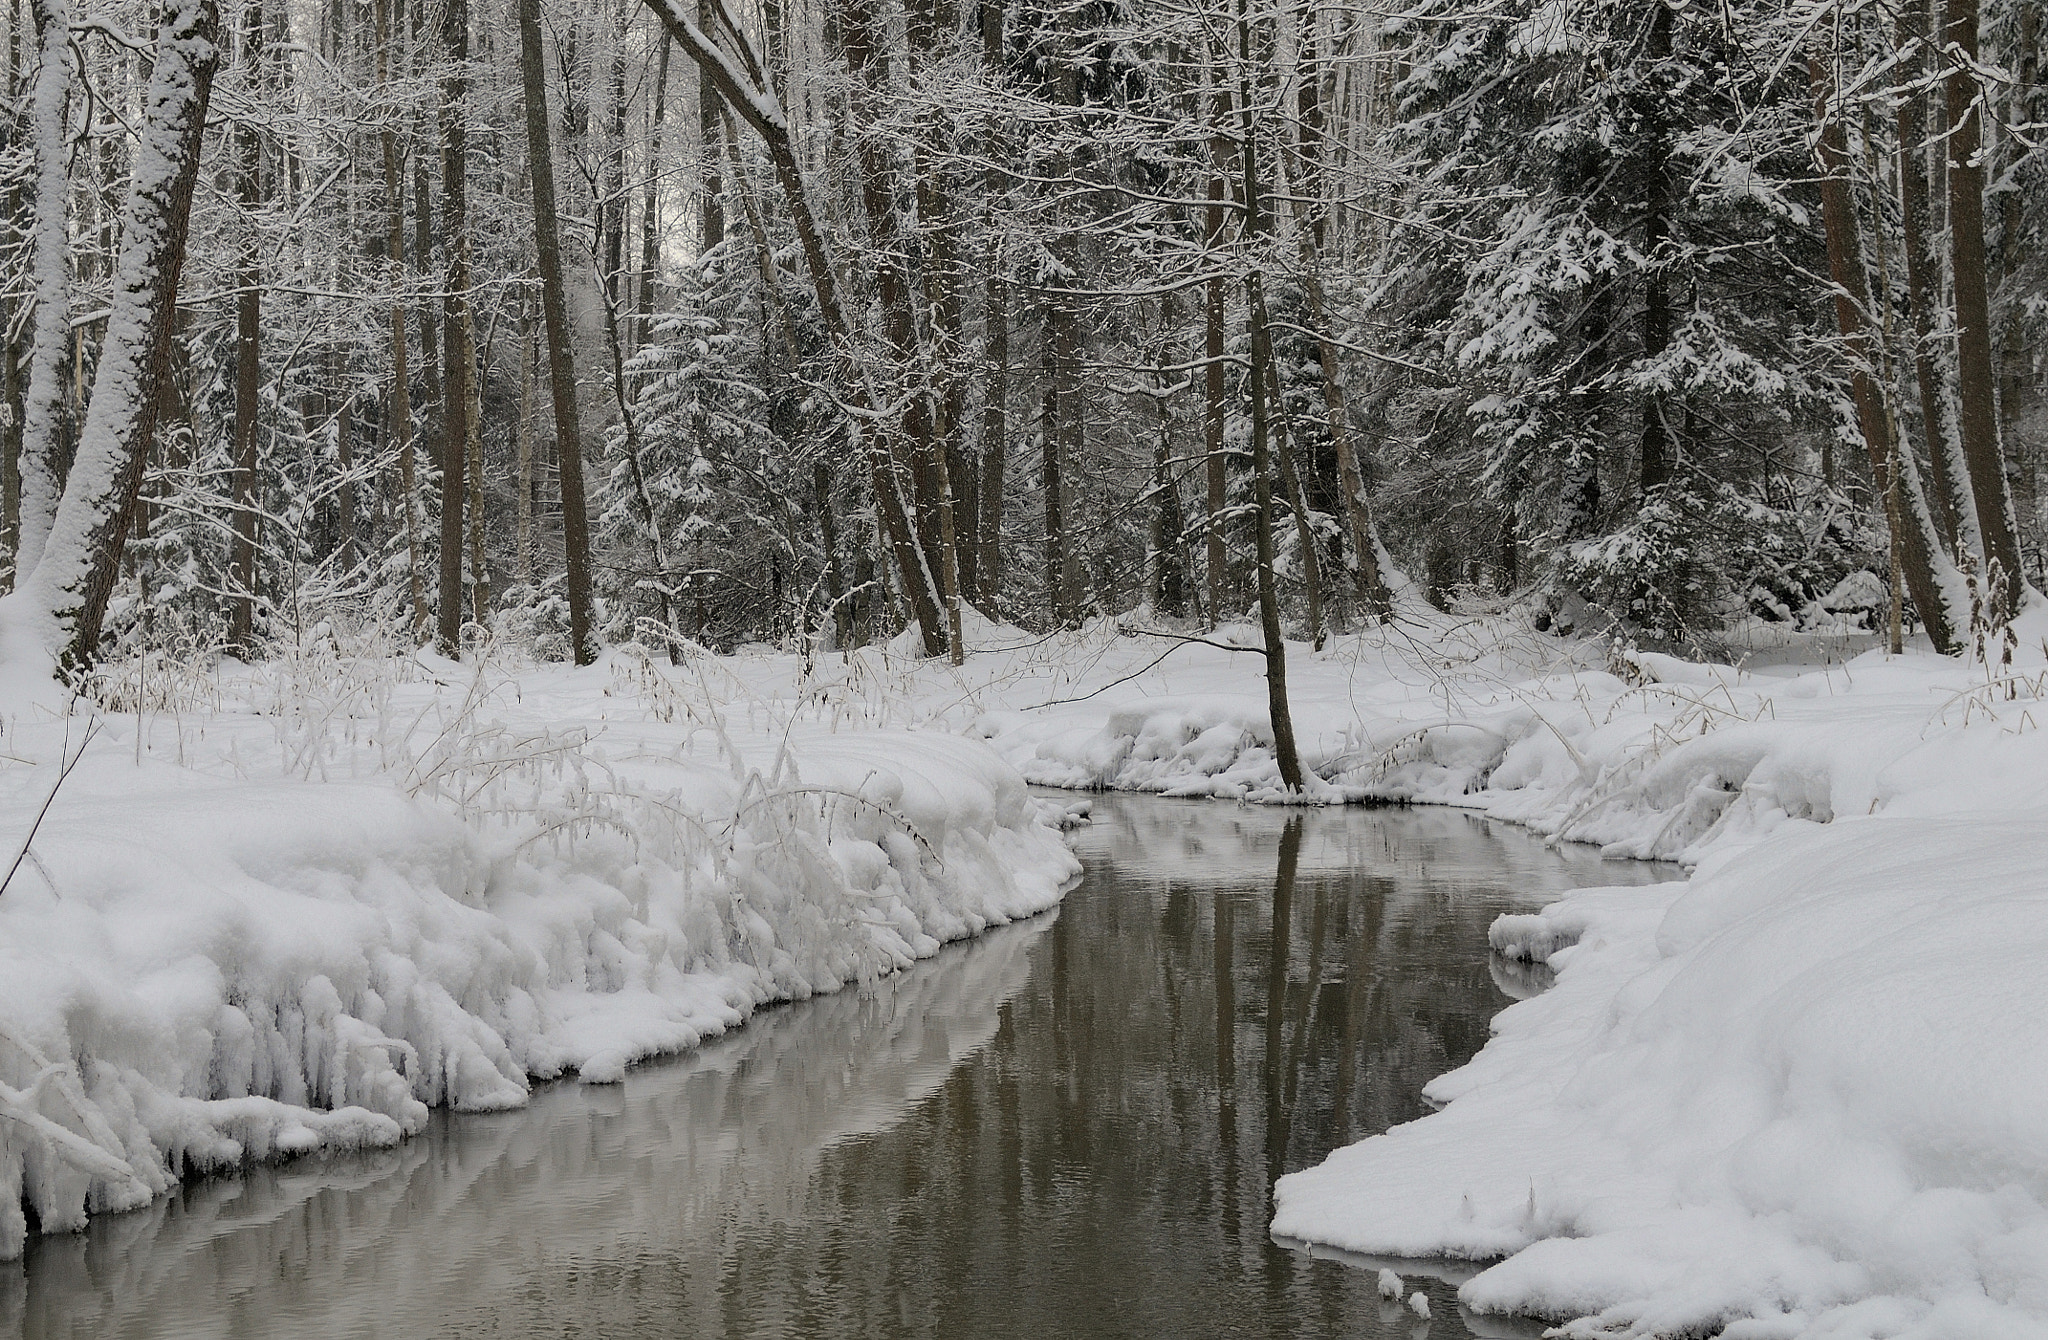 Nikon D300 + Nikon AF-S DX Nikkor 18-55mm F3.5-5.6G VR sample photo. Winter forest river. photography